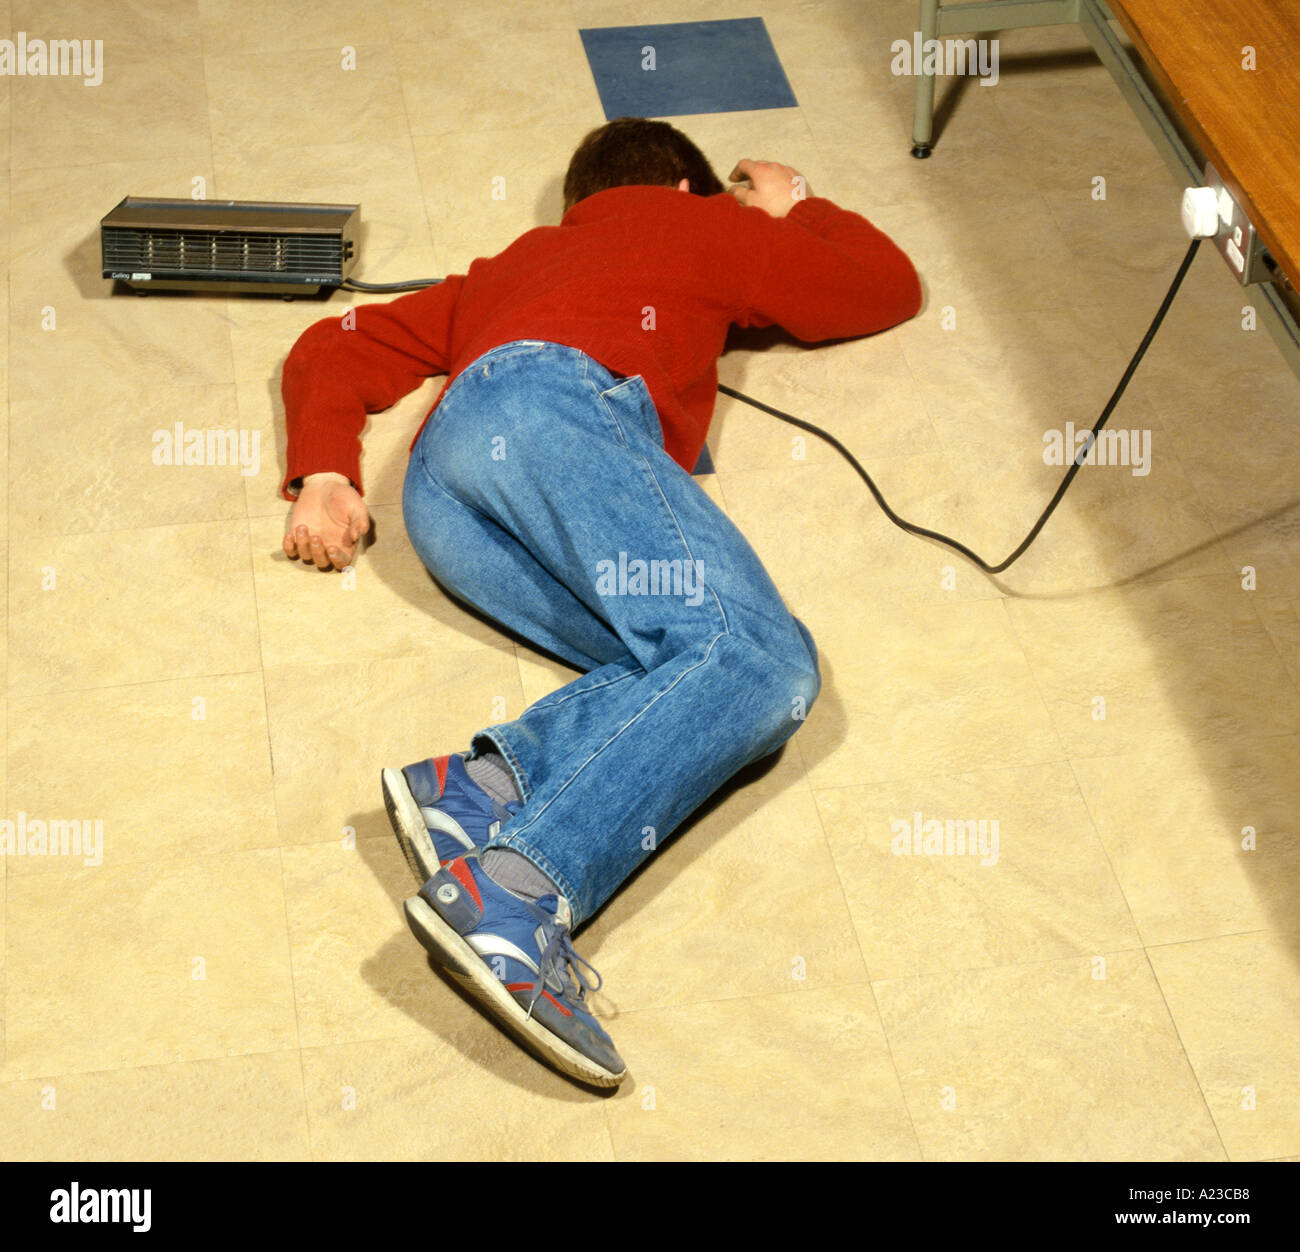 Un adolescent allongé dans votre câble électrique connecté à un radiateur électrique l'électricité peut être dangereux Banque D'Images